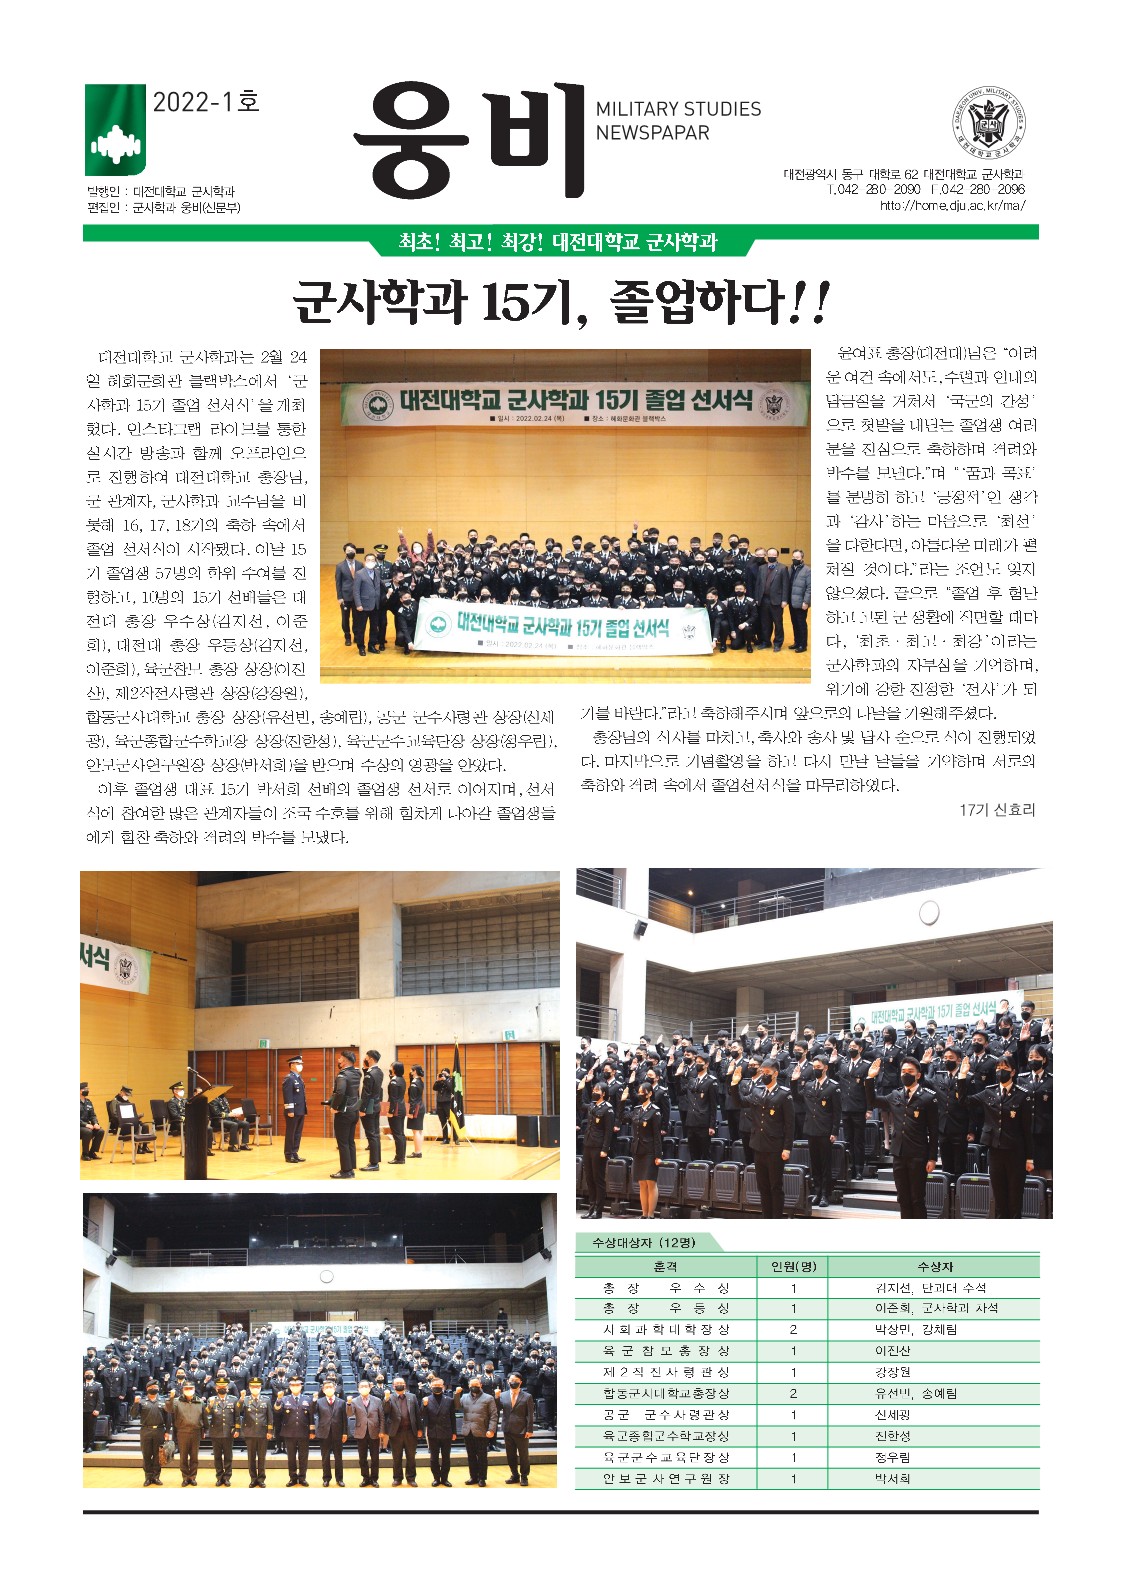 대전대학교 군사학과 신문부 웅비